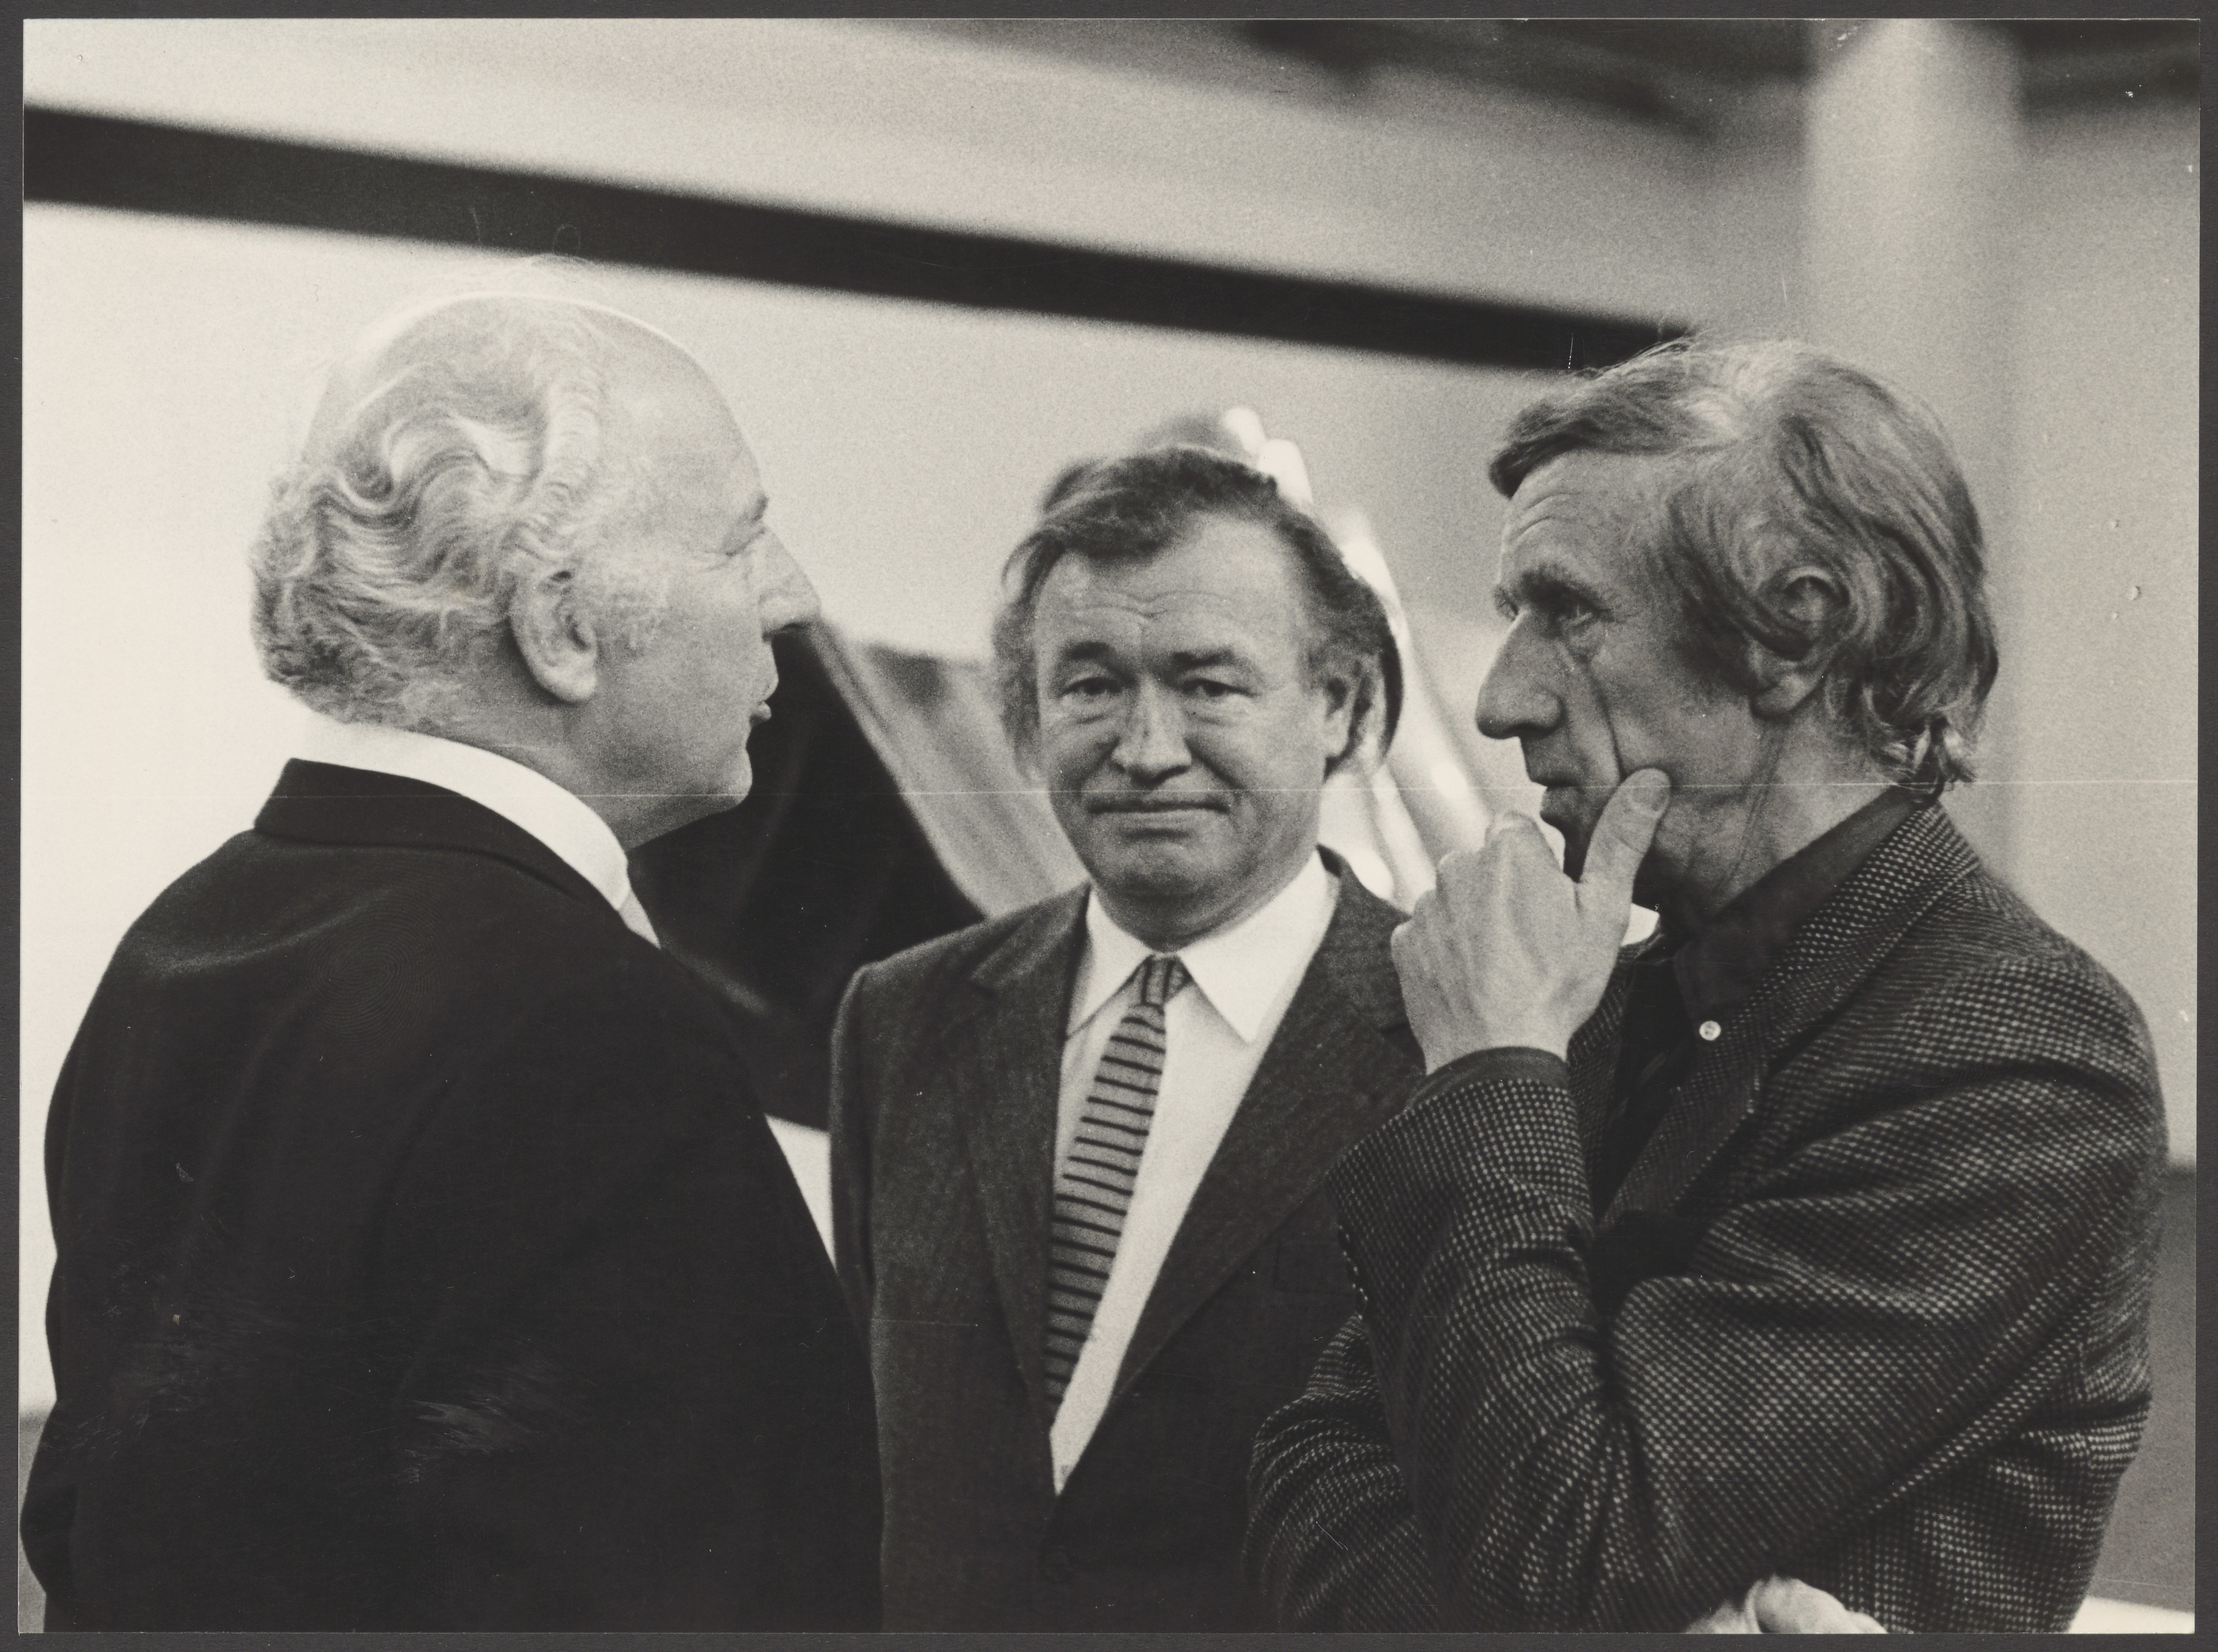 Fotodokumentation eines Zusammentreffens von Bernhard Heiliger, Walter Scheel und Werner Düttmann in der Akademie der Künste (Bernhard-Heiliger-Stiftung CC BY-NC)